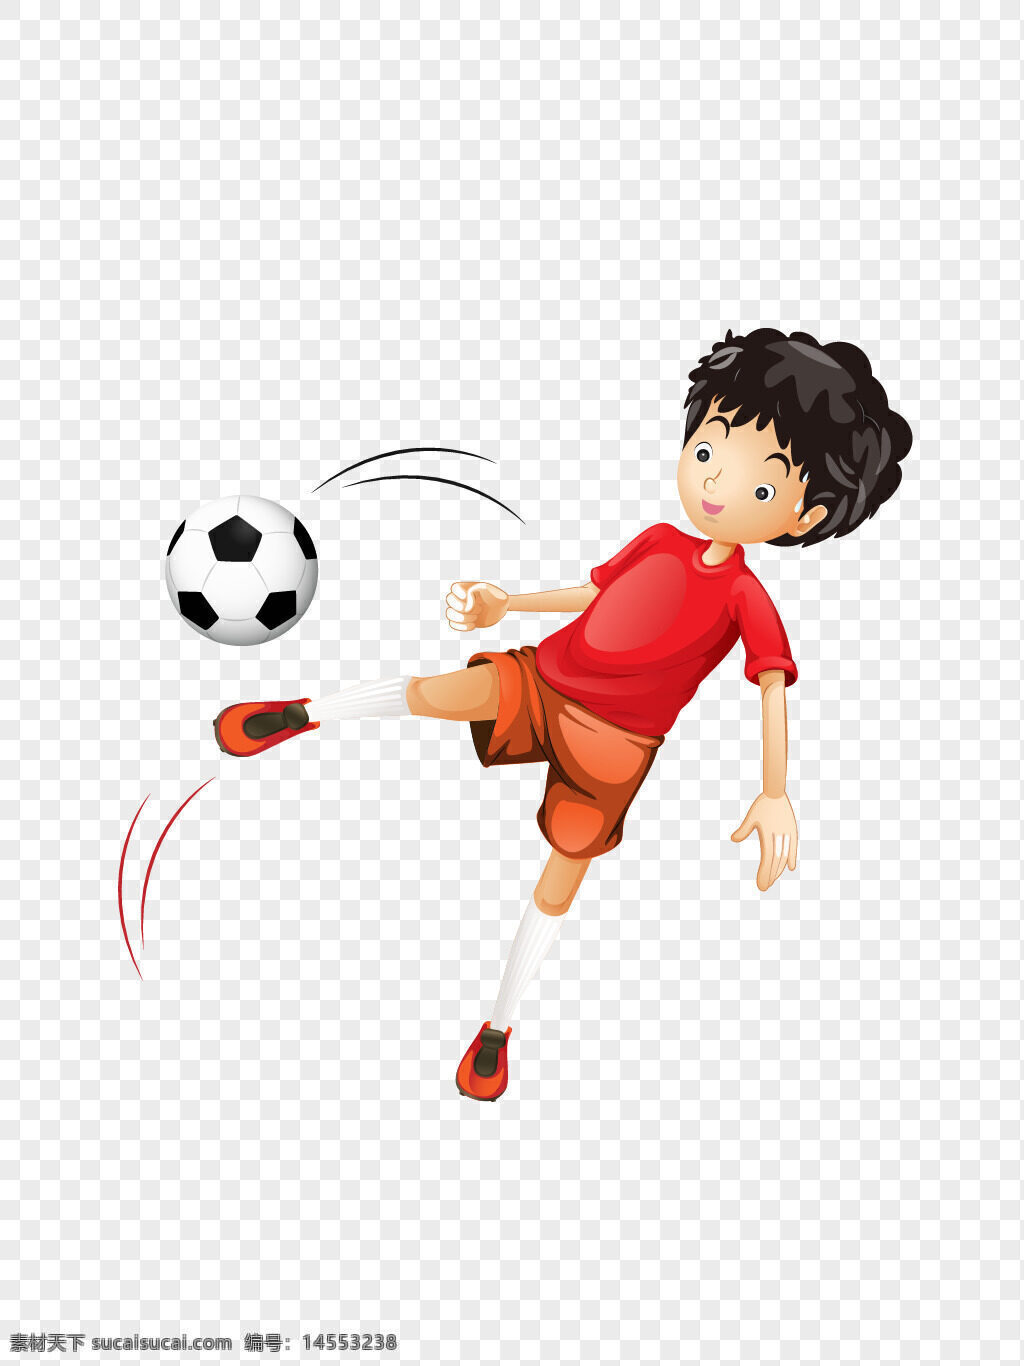 中国 红色 卡通 风格 足球 运动员 免抠 矢量 中国红色 卡通风格 足球运动员 免抠矢量 中国红色卡通风格足球运动员免抠矢量